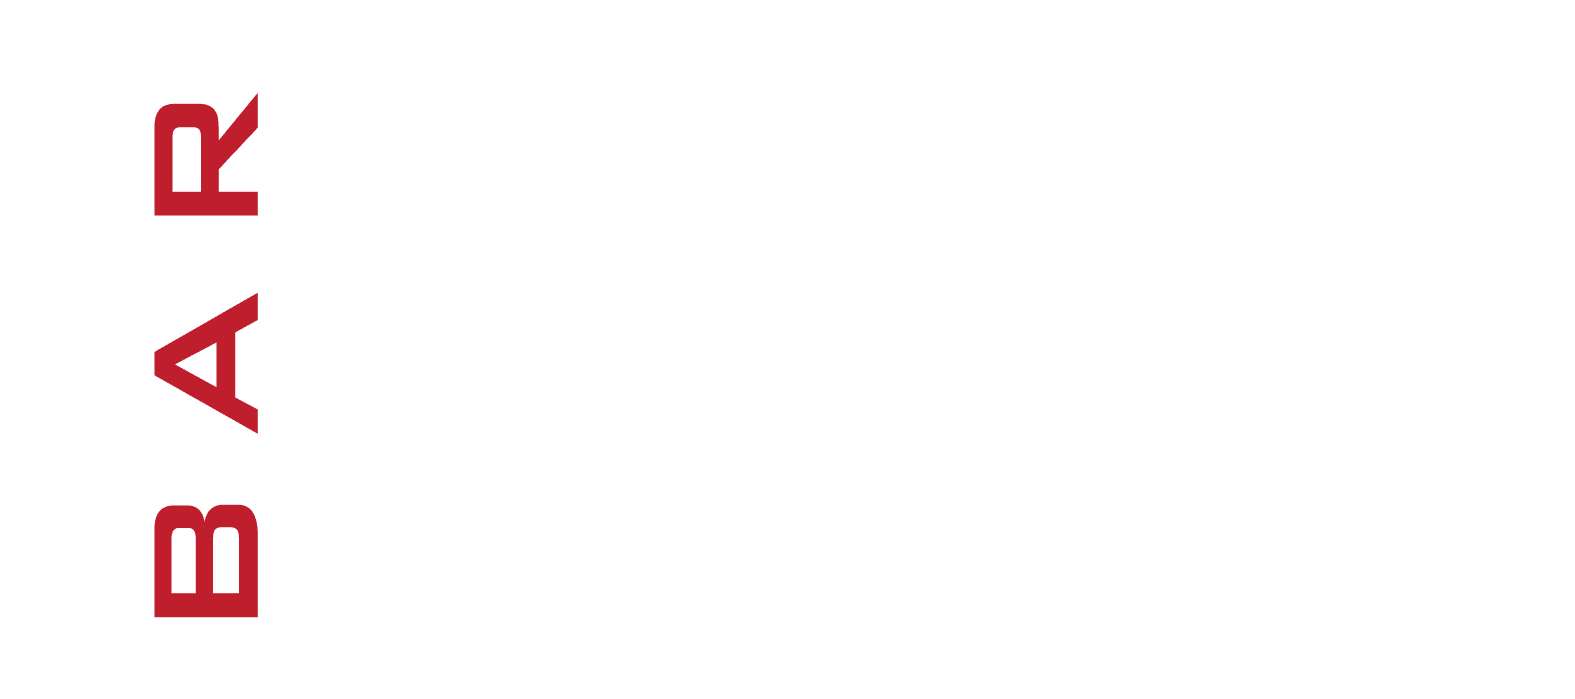 Bao Logo - Bar Bao Logo. Clarendon Day 2018